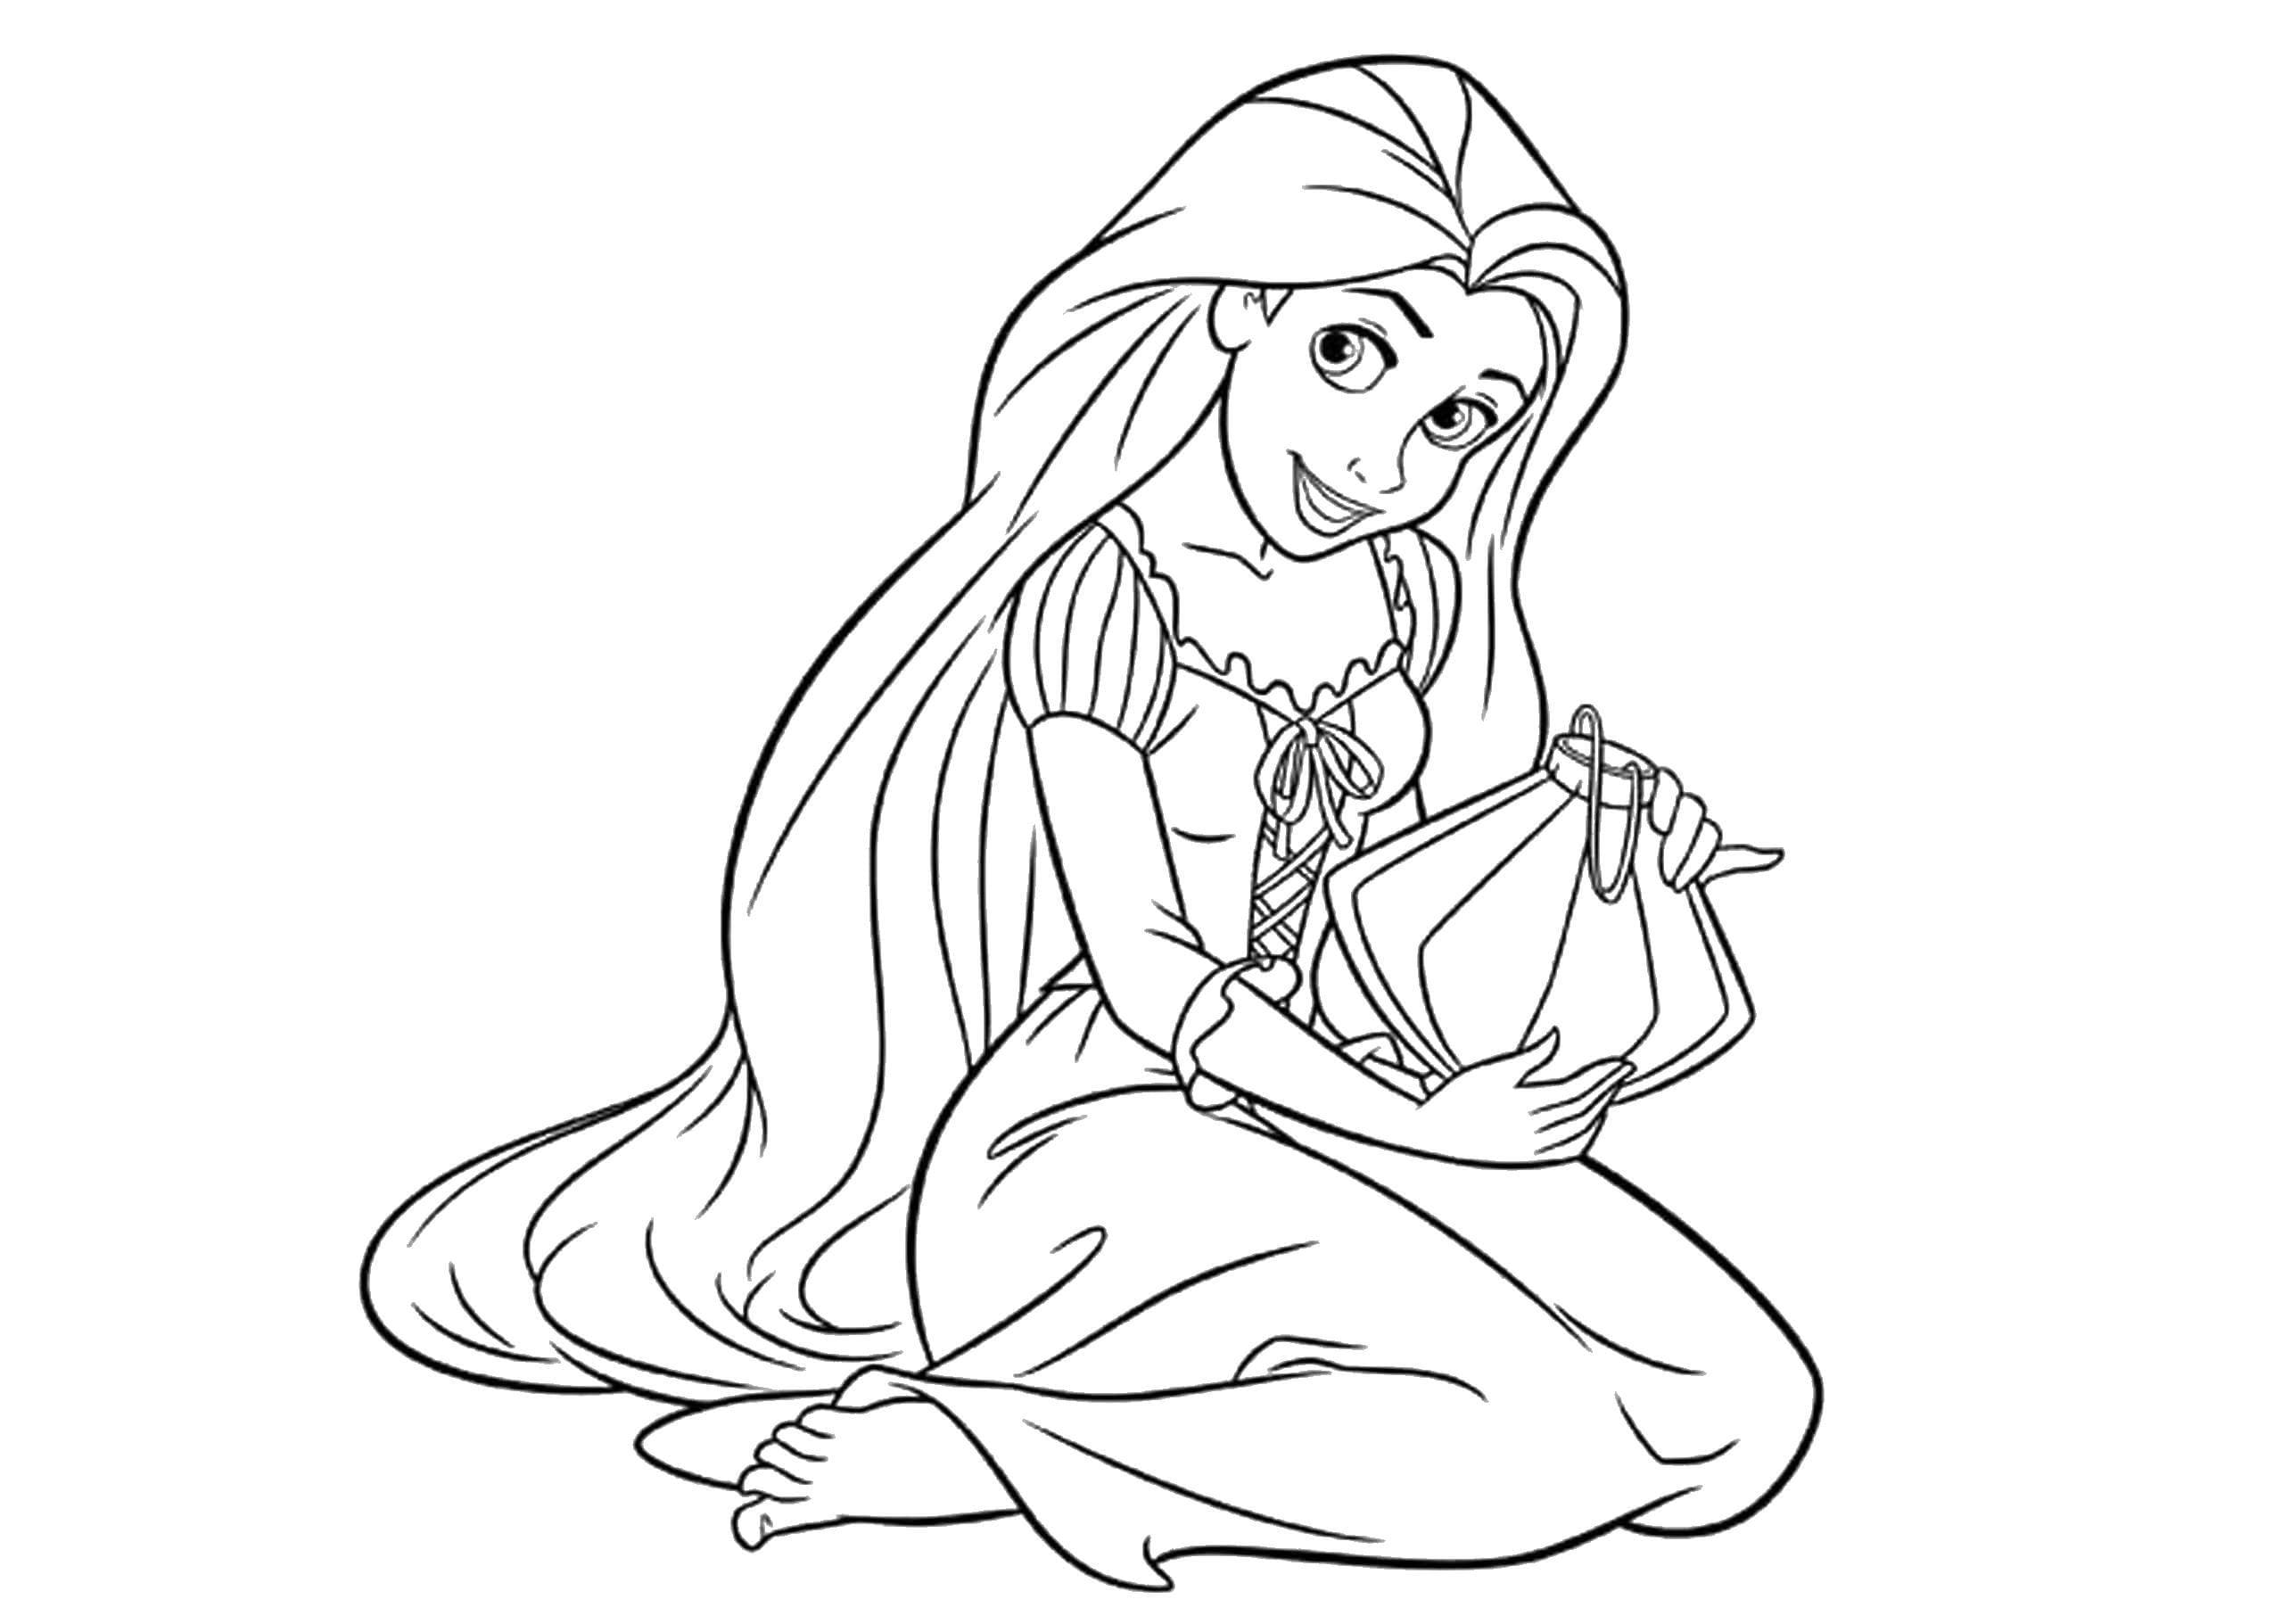 Disegni di Rapunzel da colorare - 100 immagini per la stampa gratuita